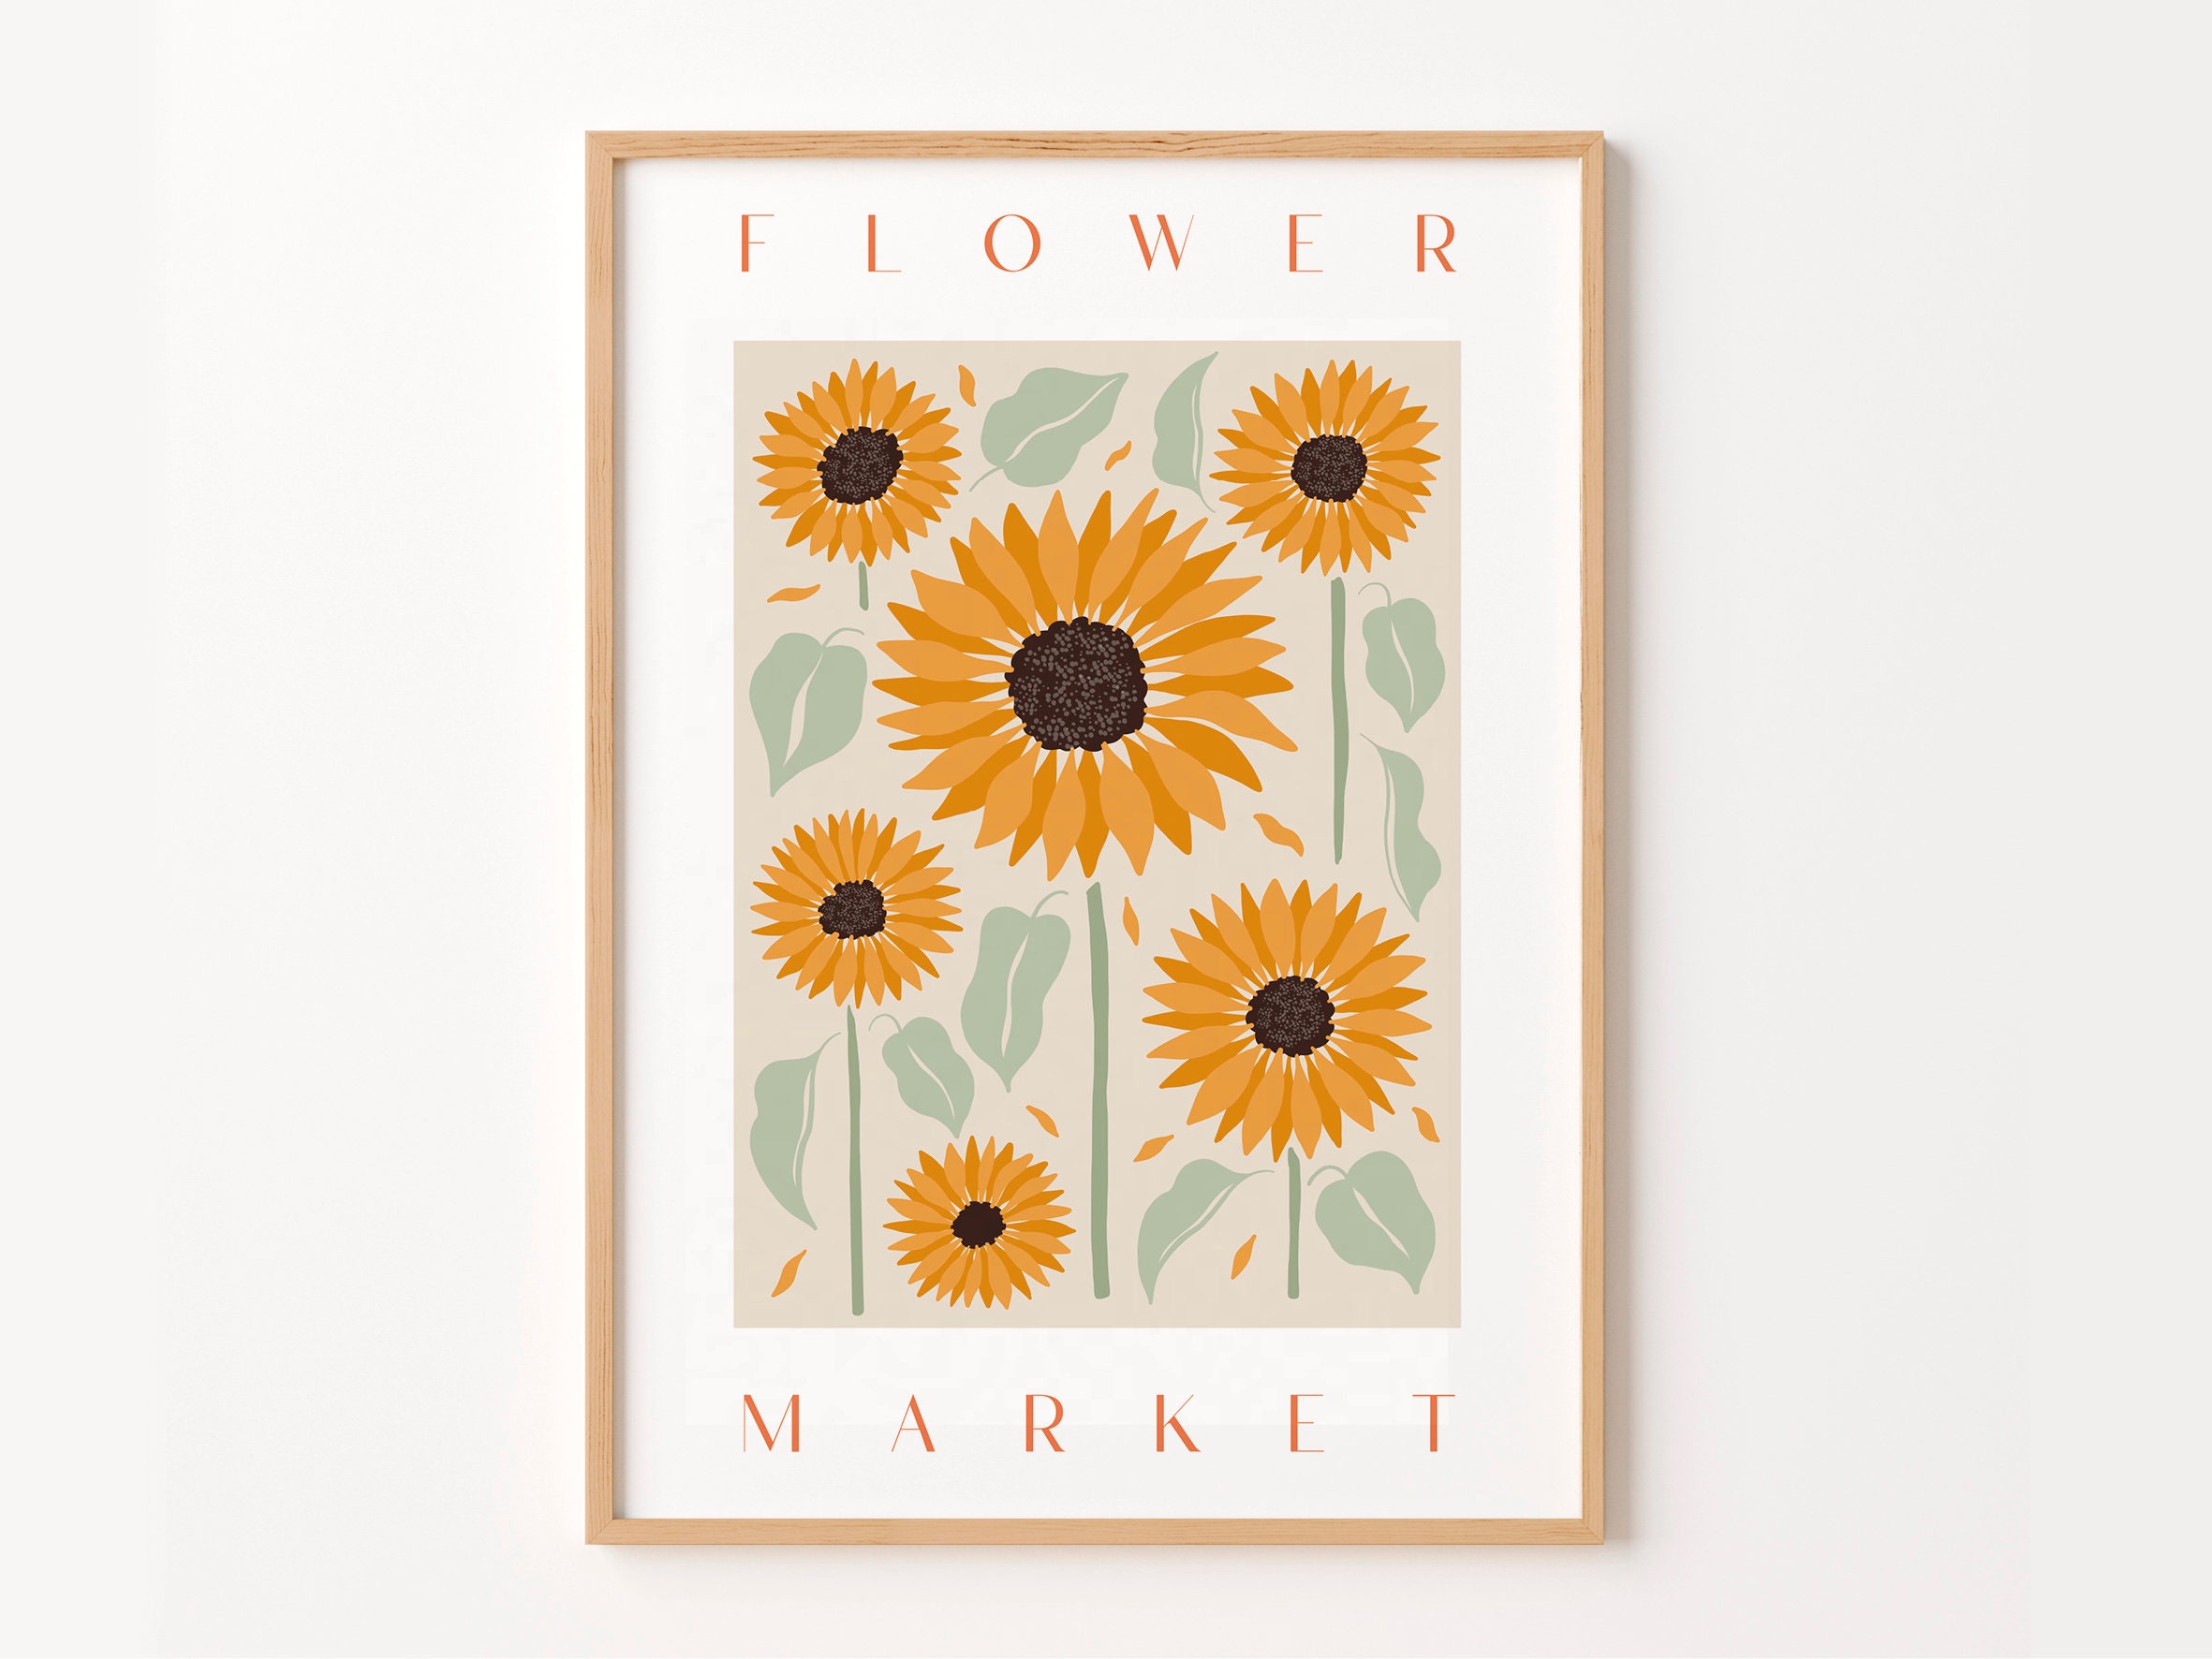 Sunflower Wedding Book 8x10 Photo Album Ring Bound Wedding -  Nederland